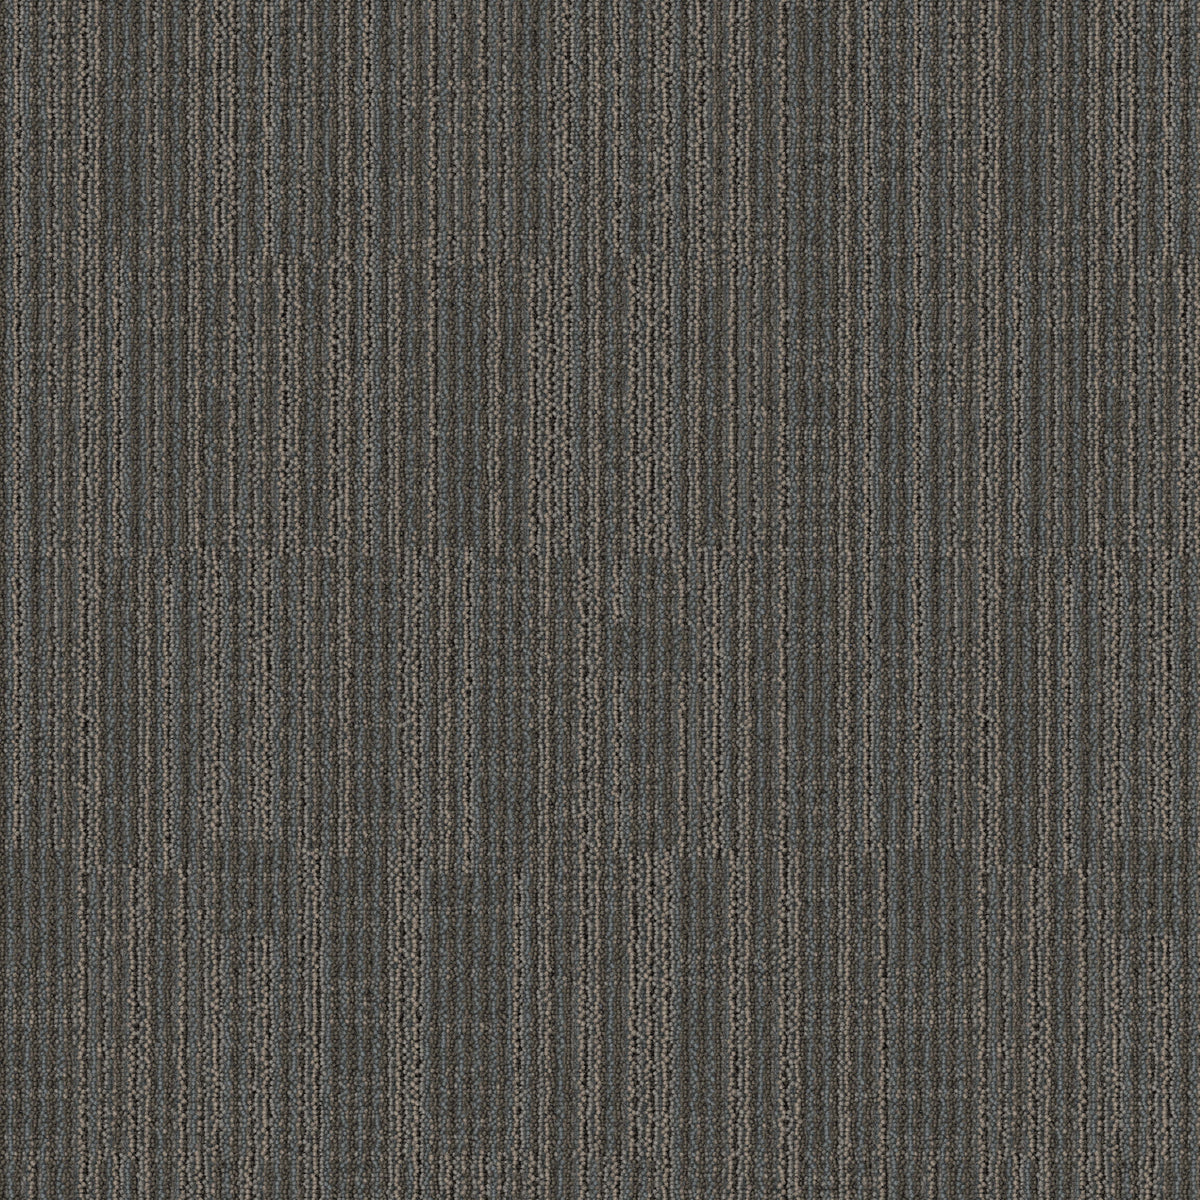 Mohawk Group - Bending Earth - Datum - Carpet Tile - Shale